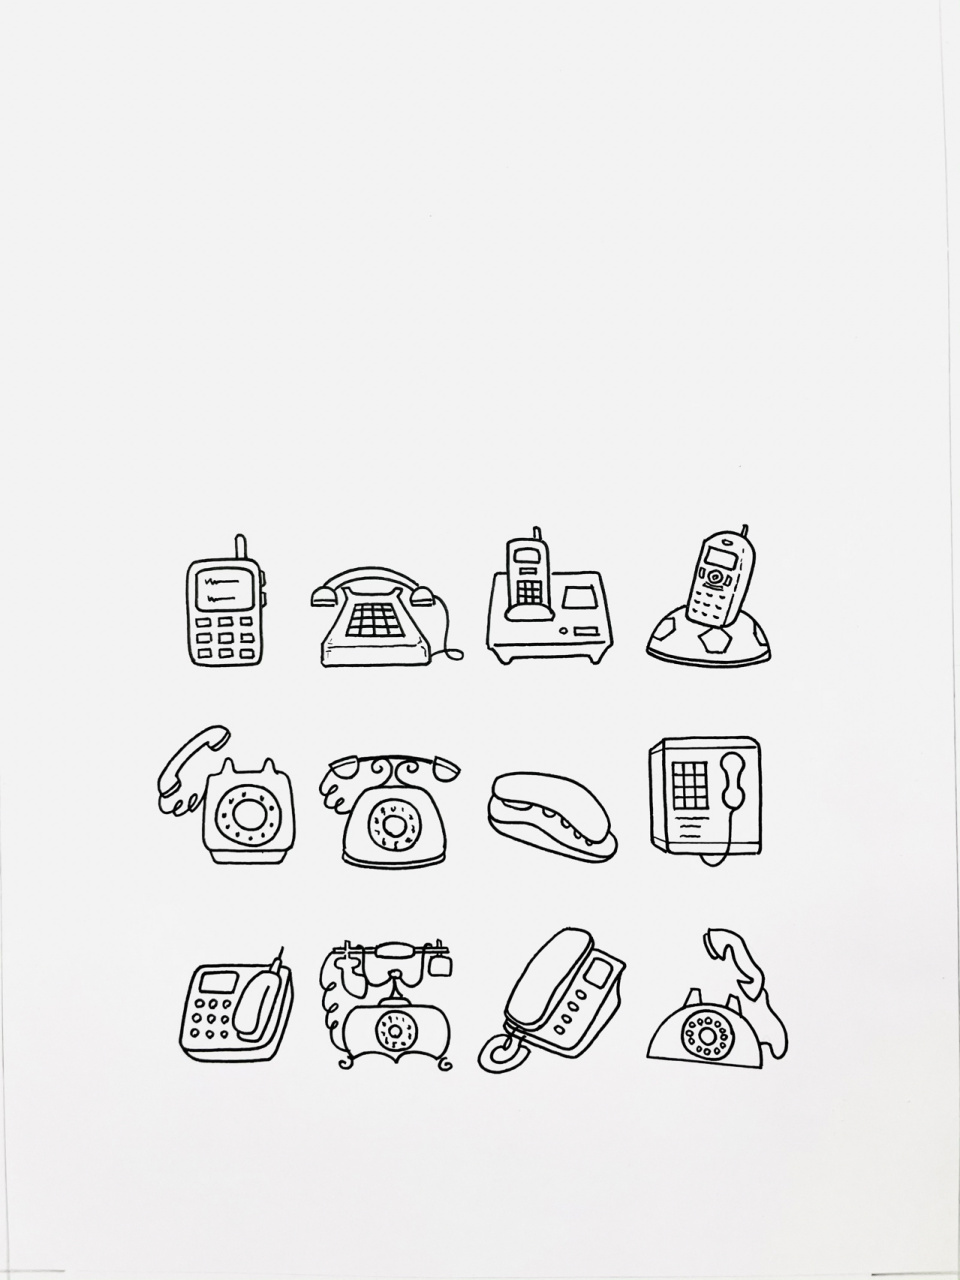 【简笔画】电话7815 分享一组生活用品简笔画—电话 各种形态的